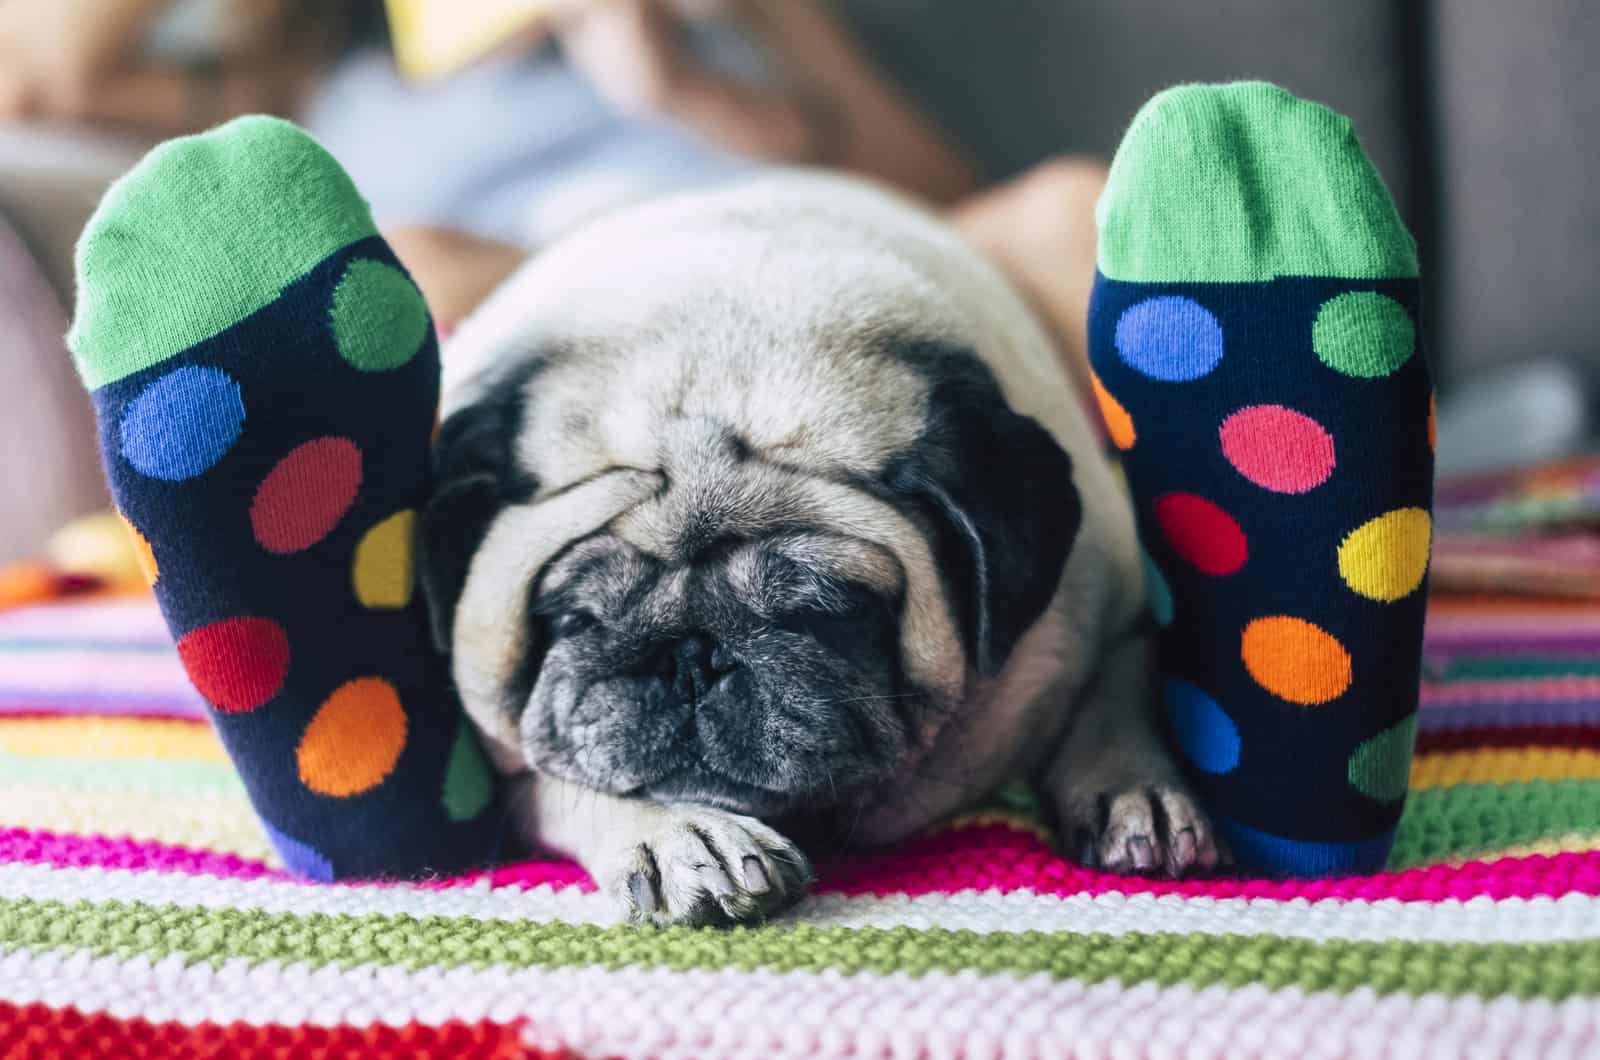 pug sleeping between owner's legs